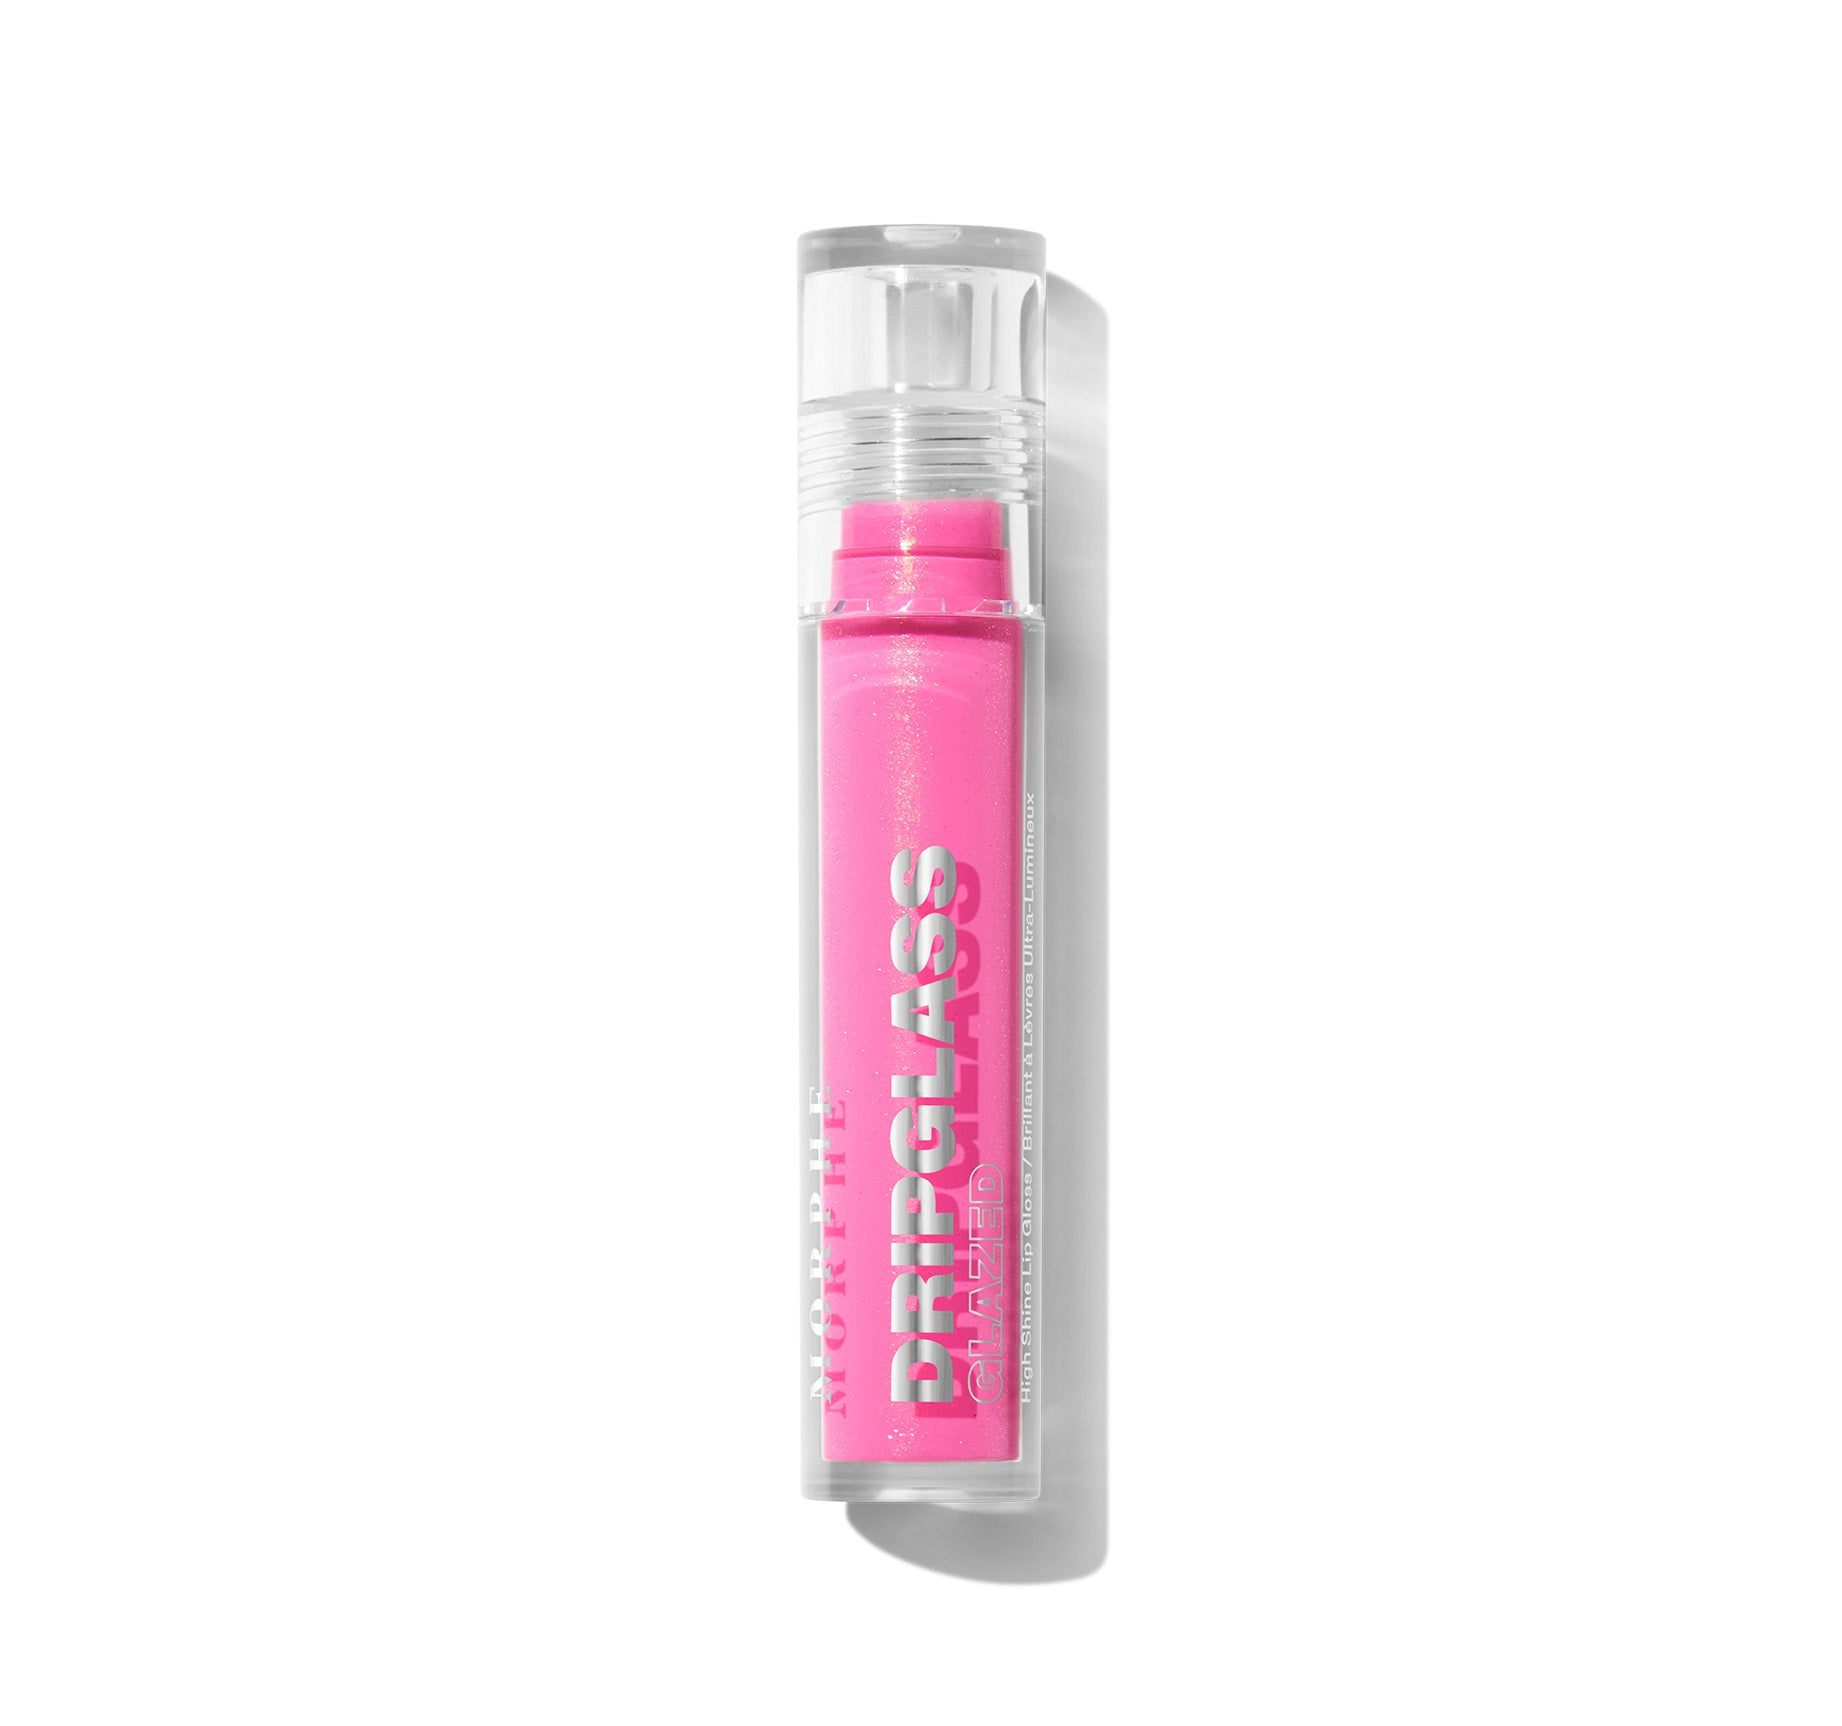 Dripglass Glazed High Shine Lip Gloss - Glint Of Pink - Image 7